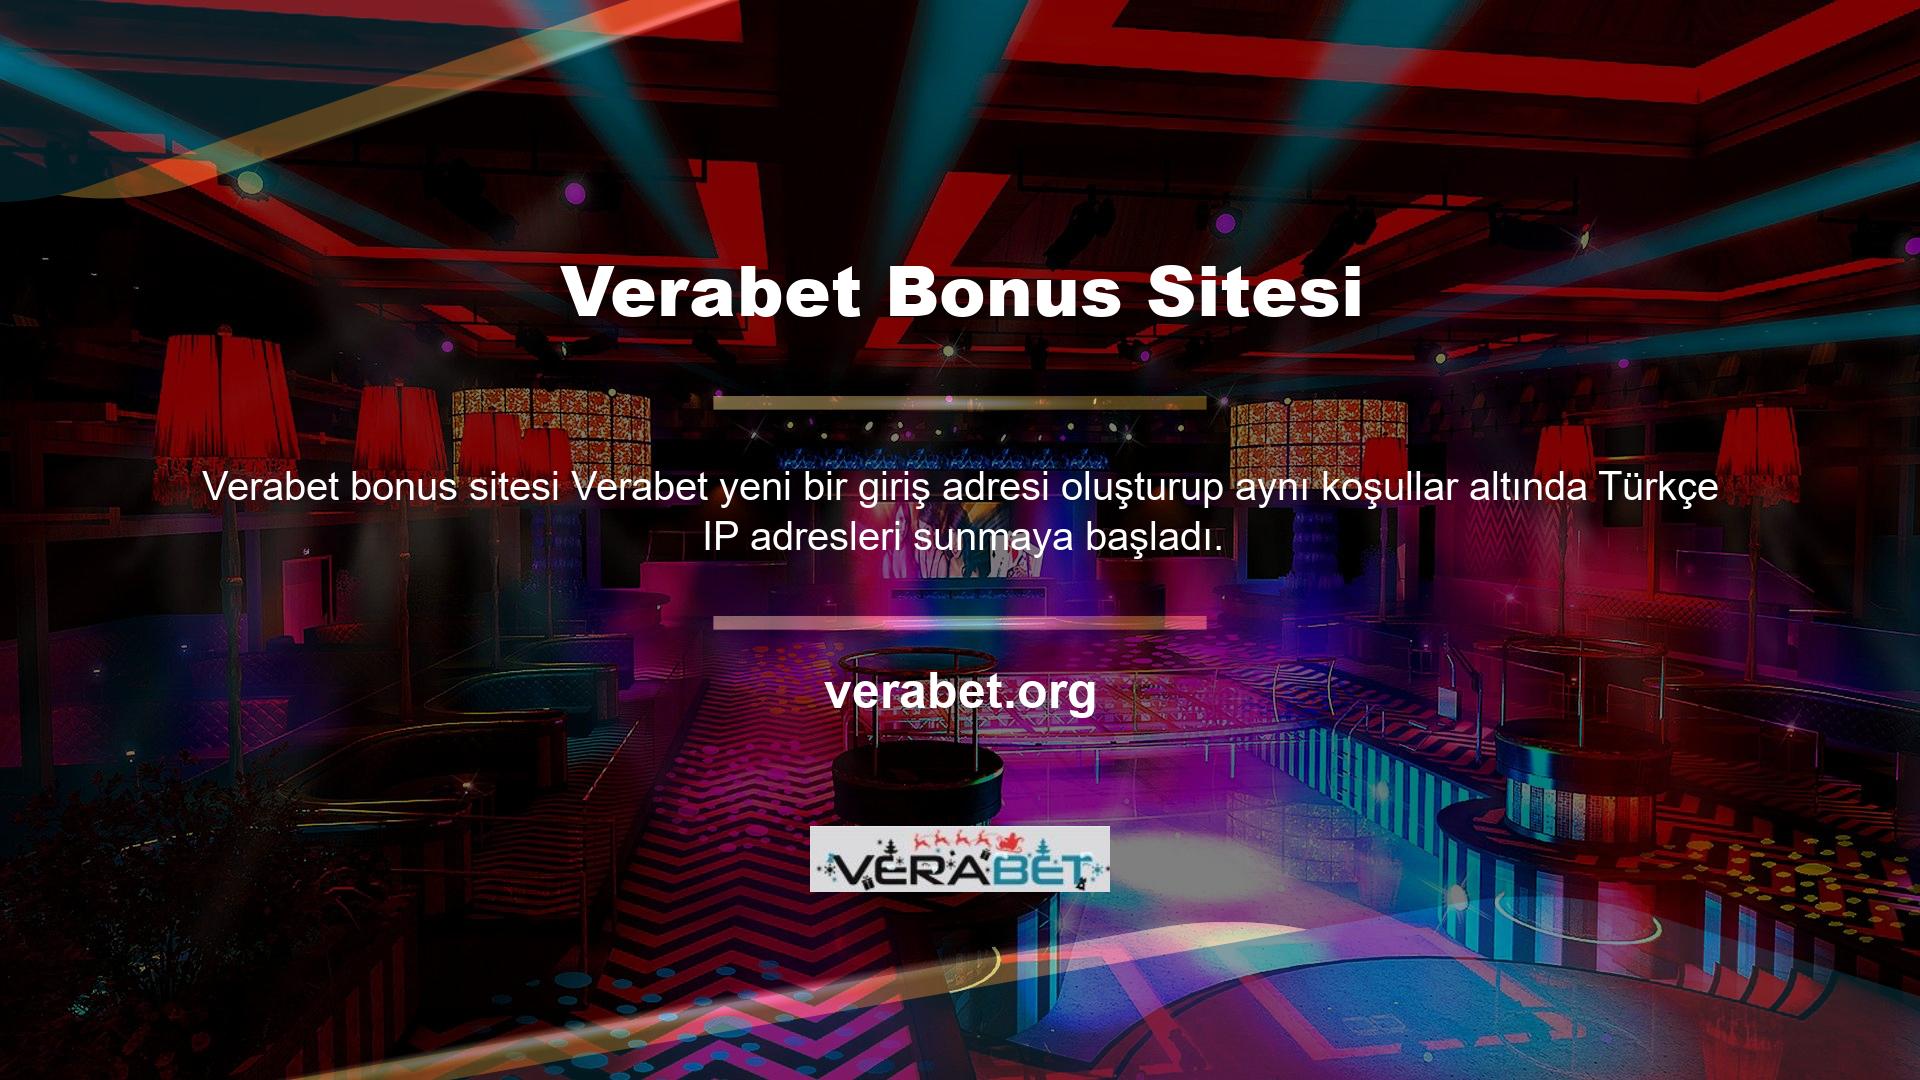 Son zamanlarda adres değişikliğine rağmen yeni değişikliklerin ortaya çıkması Verabet web sitesinin popülerliğini gösteriyor